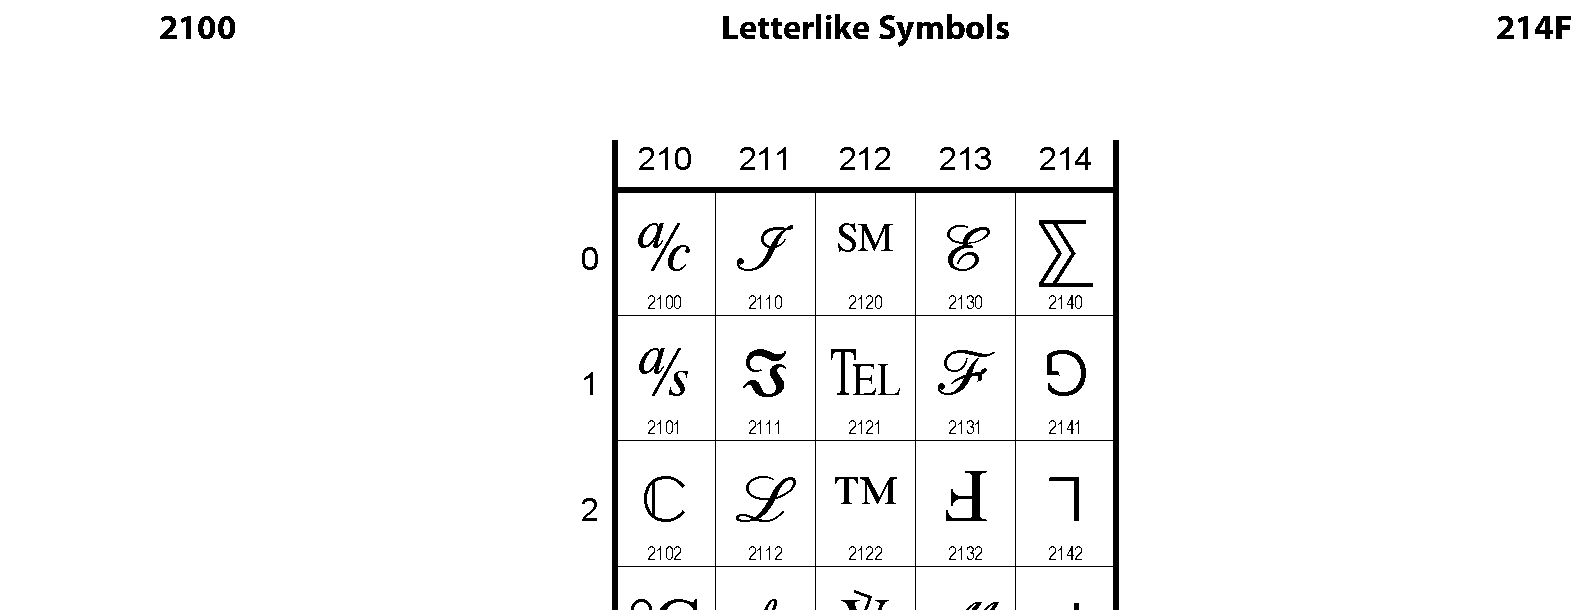 Unicode - Letterlike Symbols